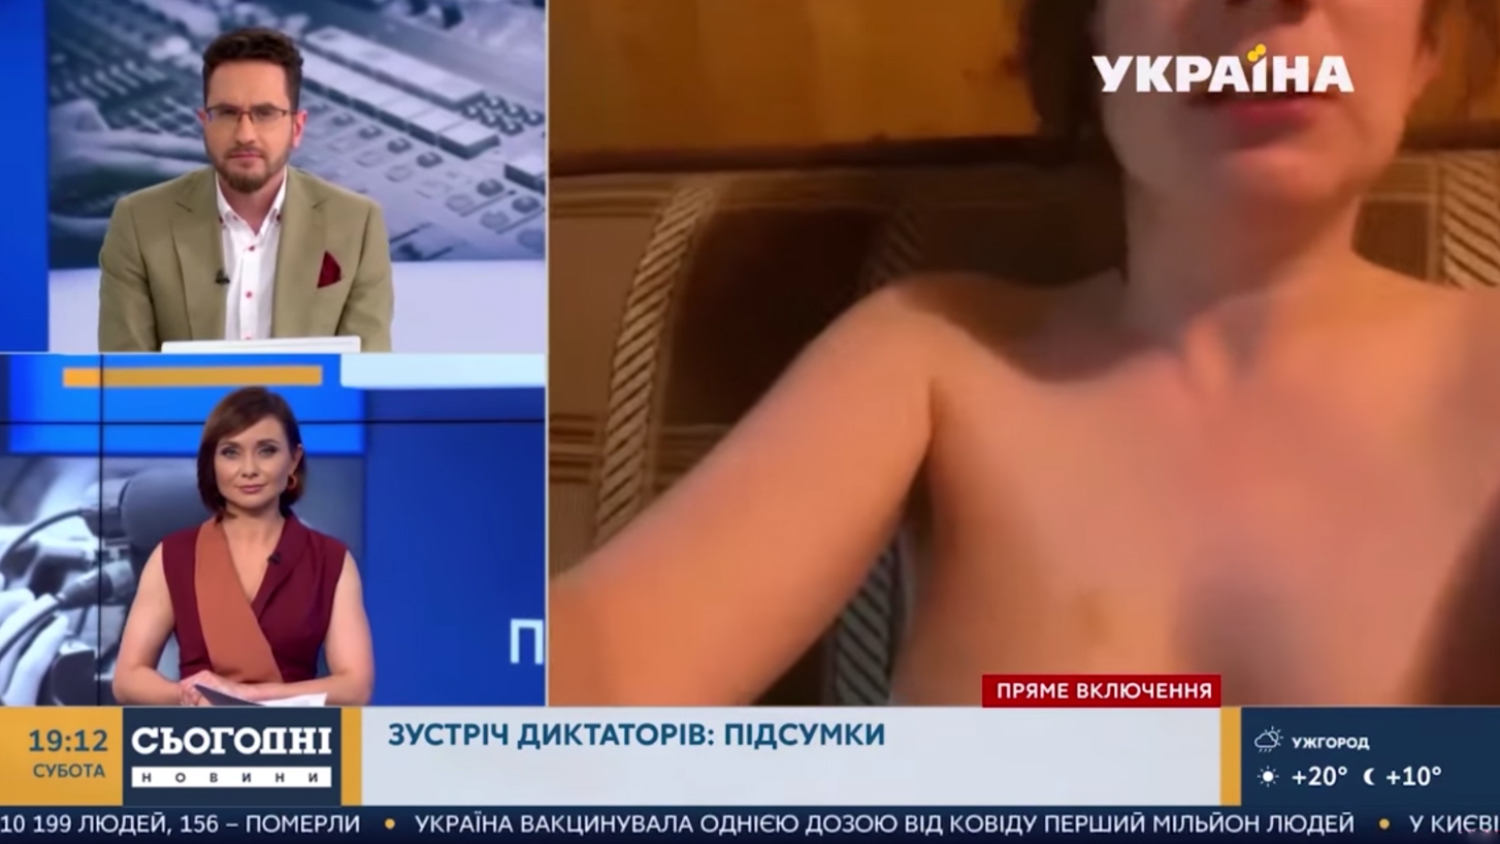 Голые Новости видео выпуски новостей с обнаженными телеведущими | Порно на Приколе!